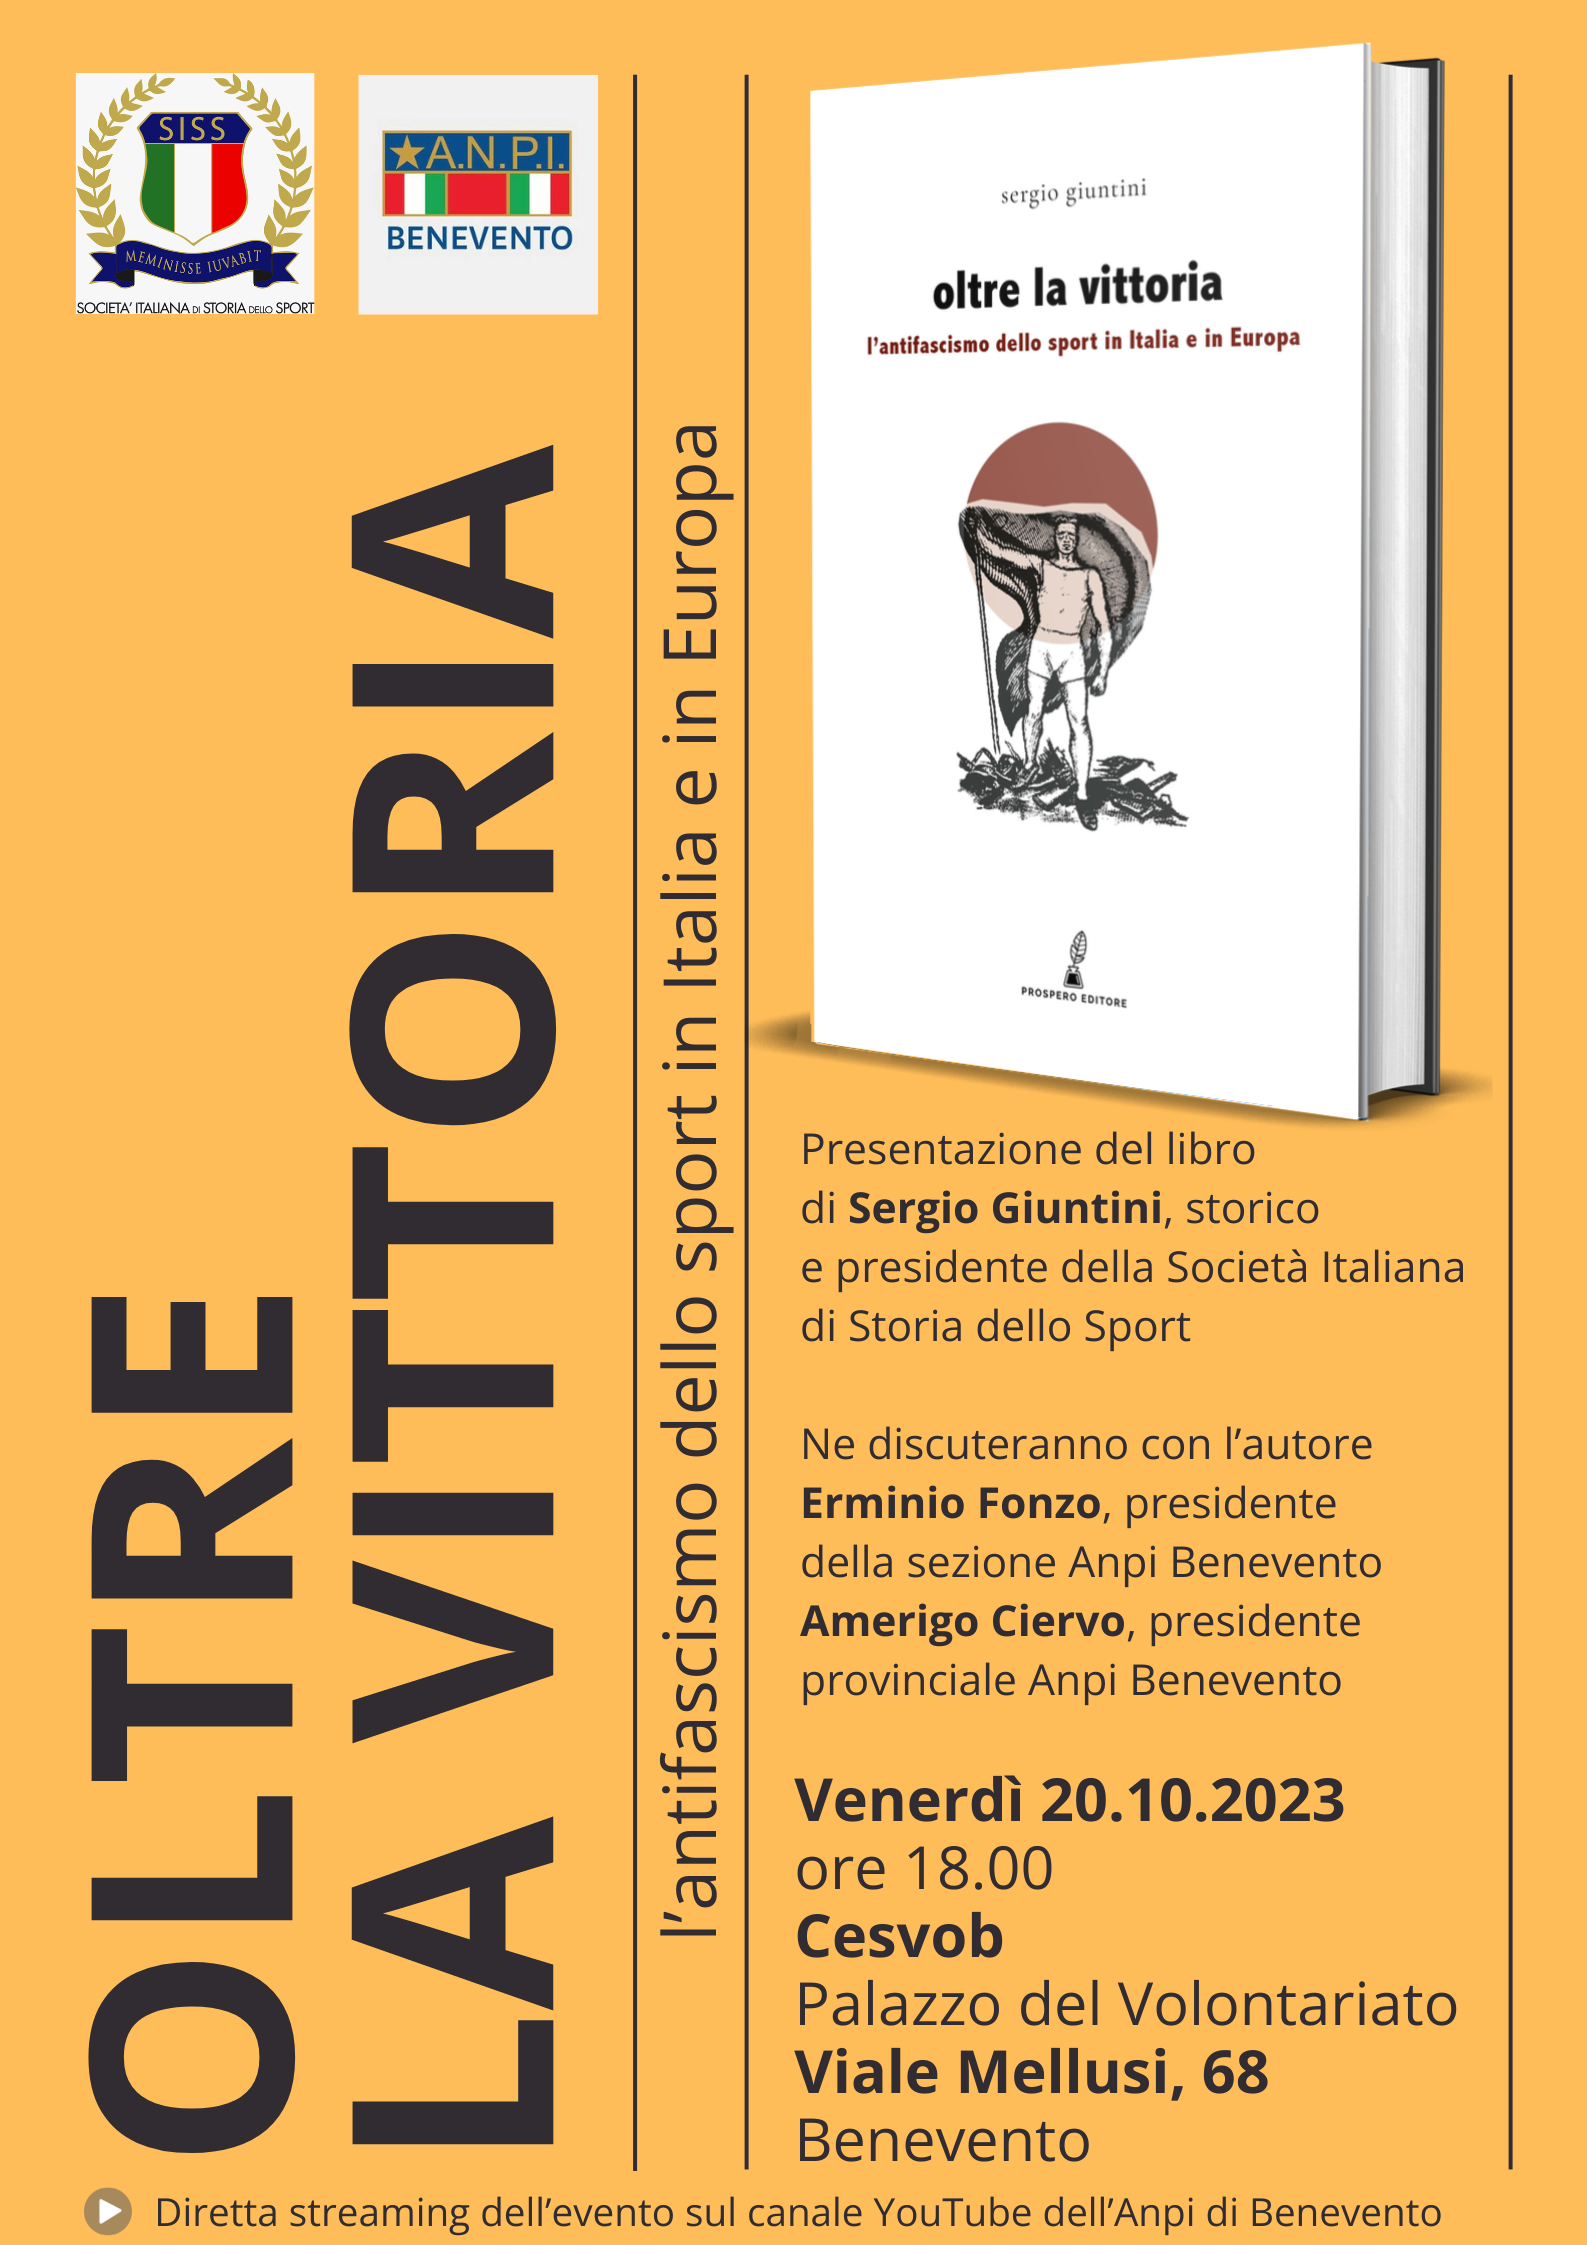 Venerdì a Benevento la presentazione di un libro di Sergio Giuntini sull’antifascismo nello sport 